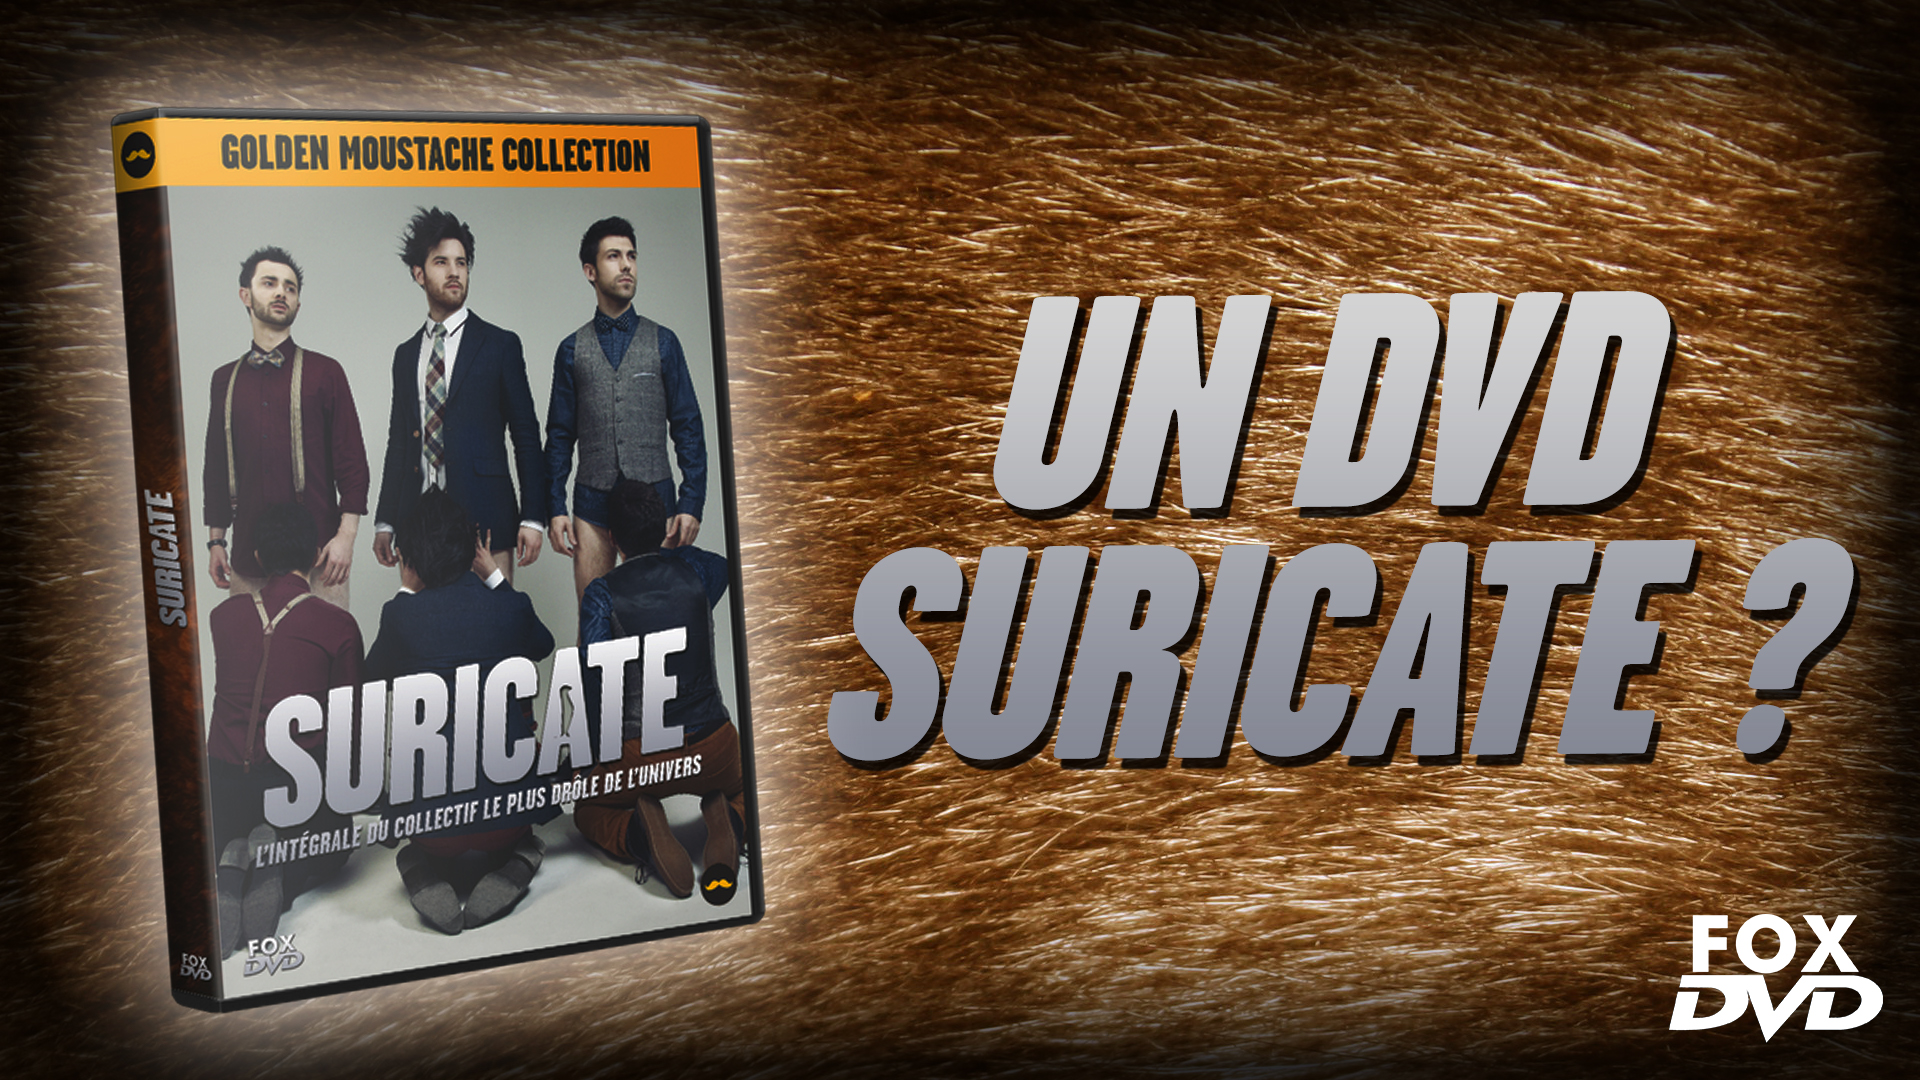 Fox DVD #34 – Suricate